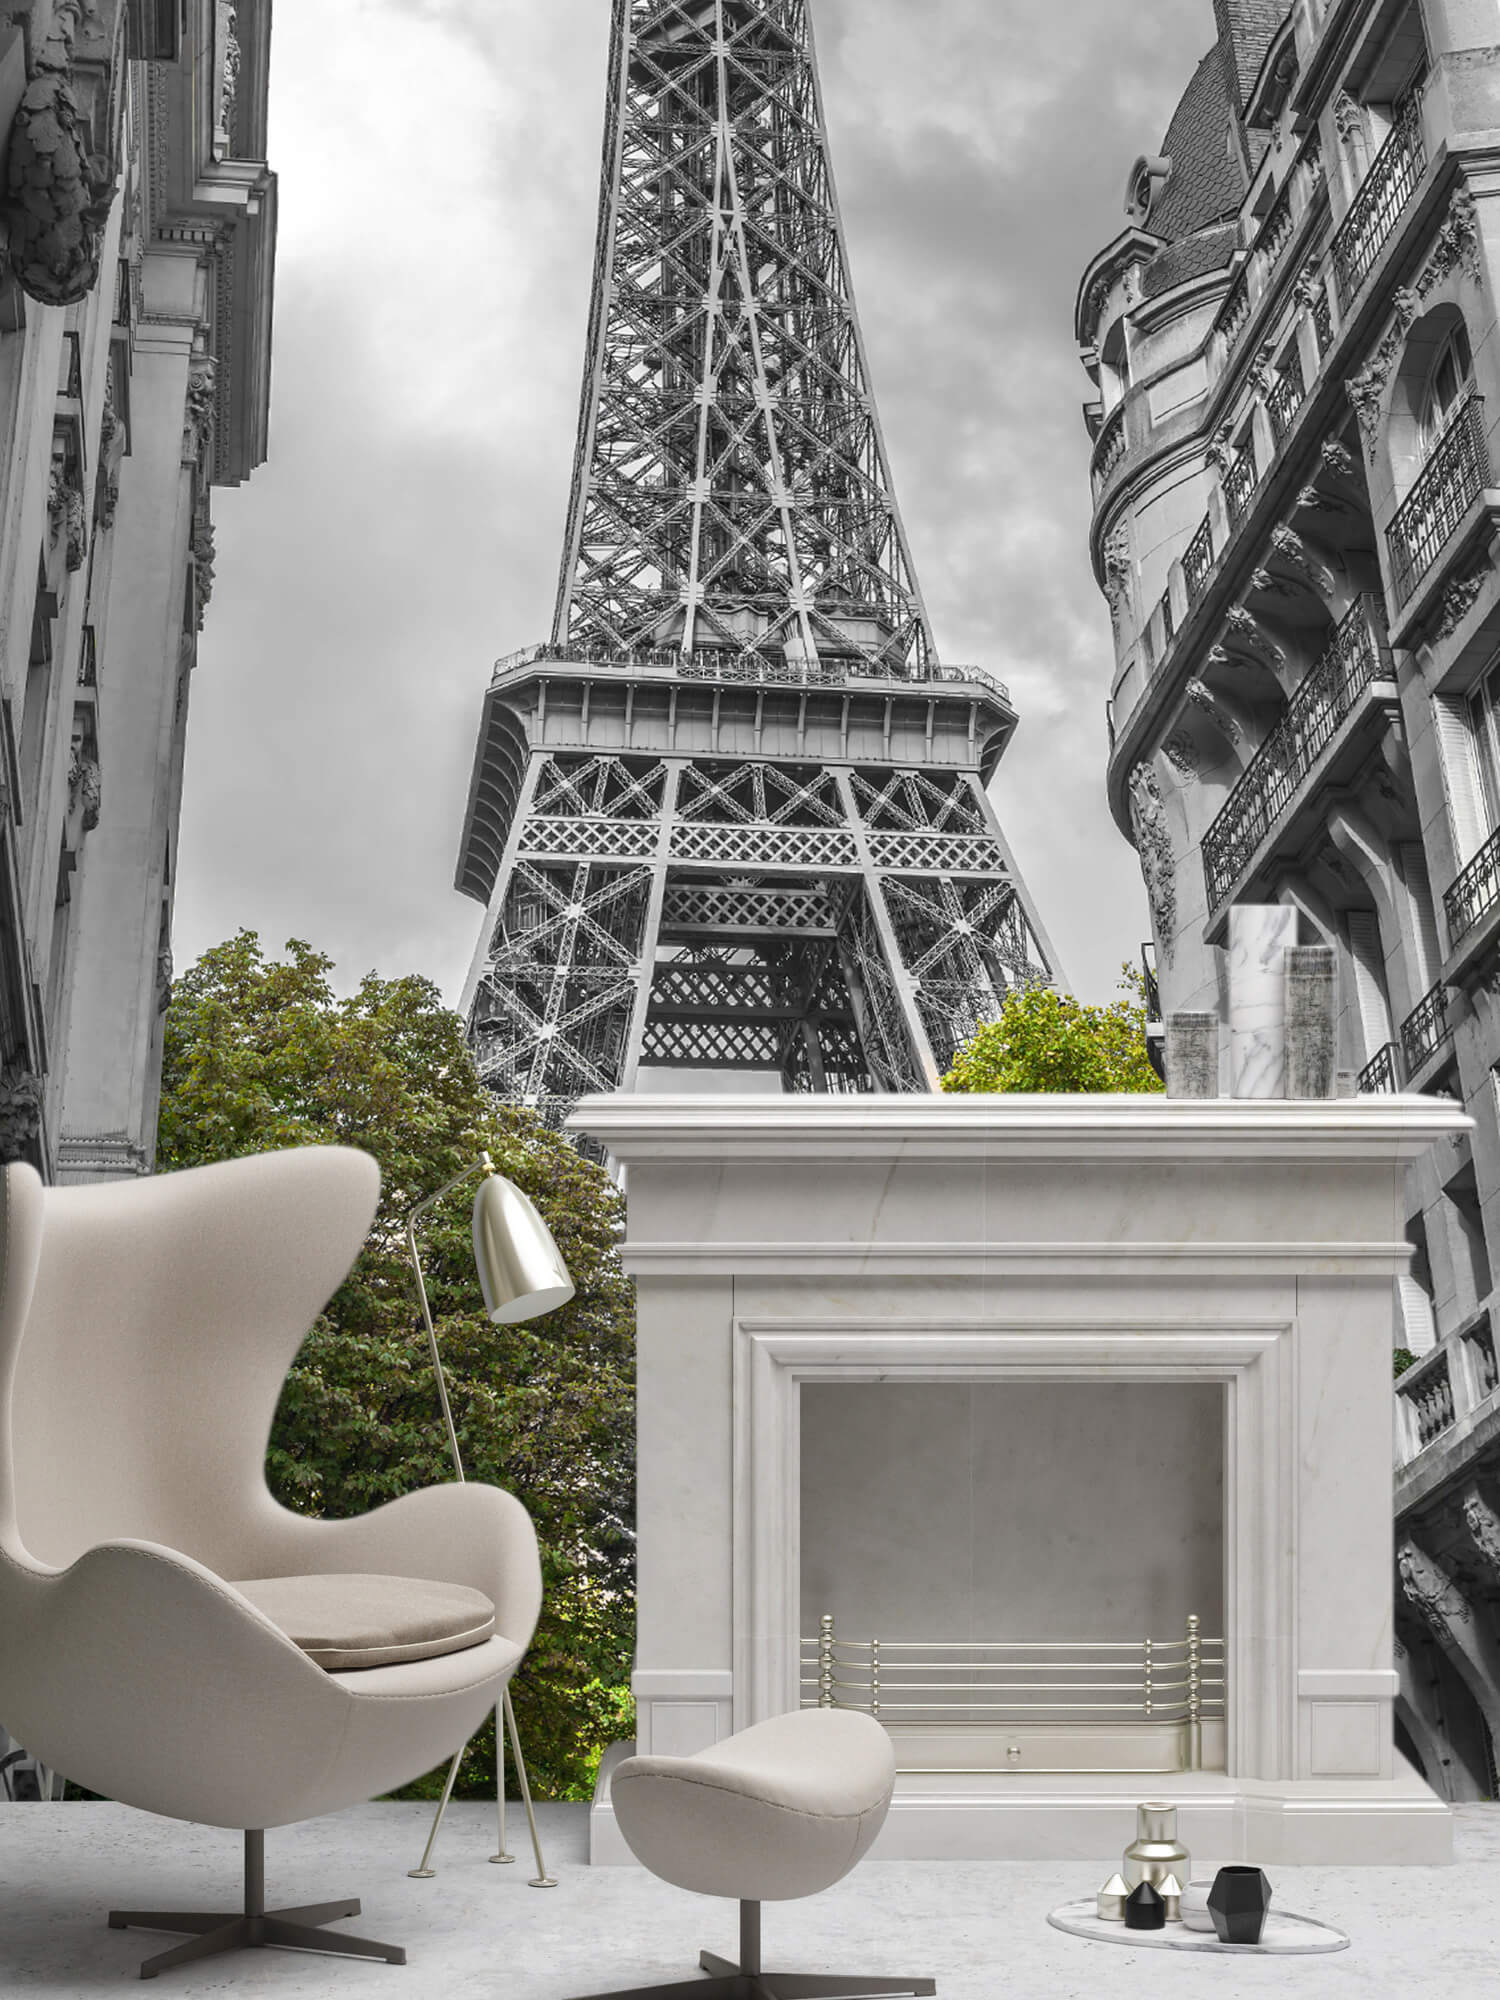  Papel pintado con Torre Eiffel en blanco y negro - Pasillo 8